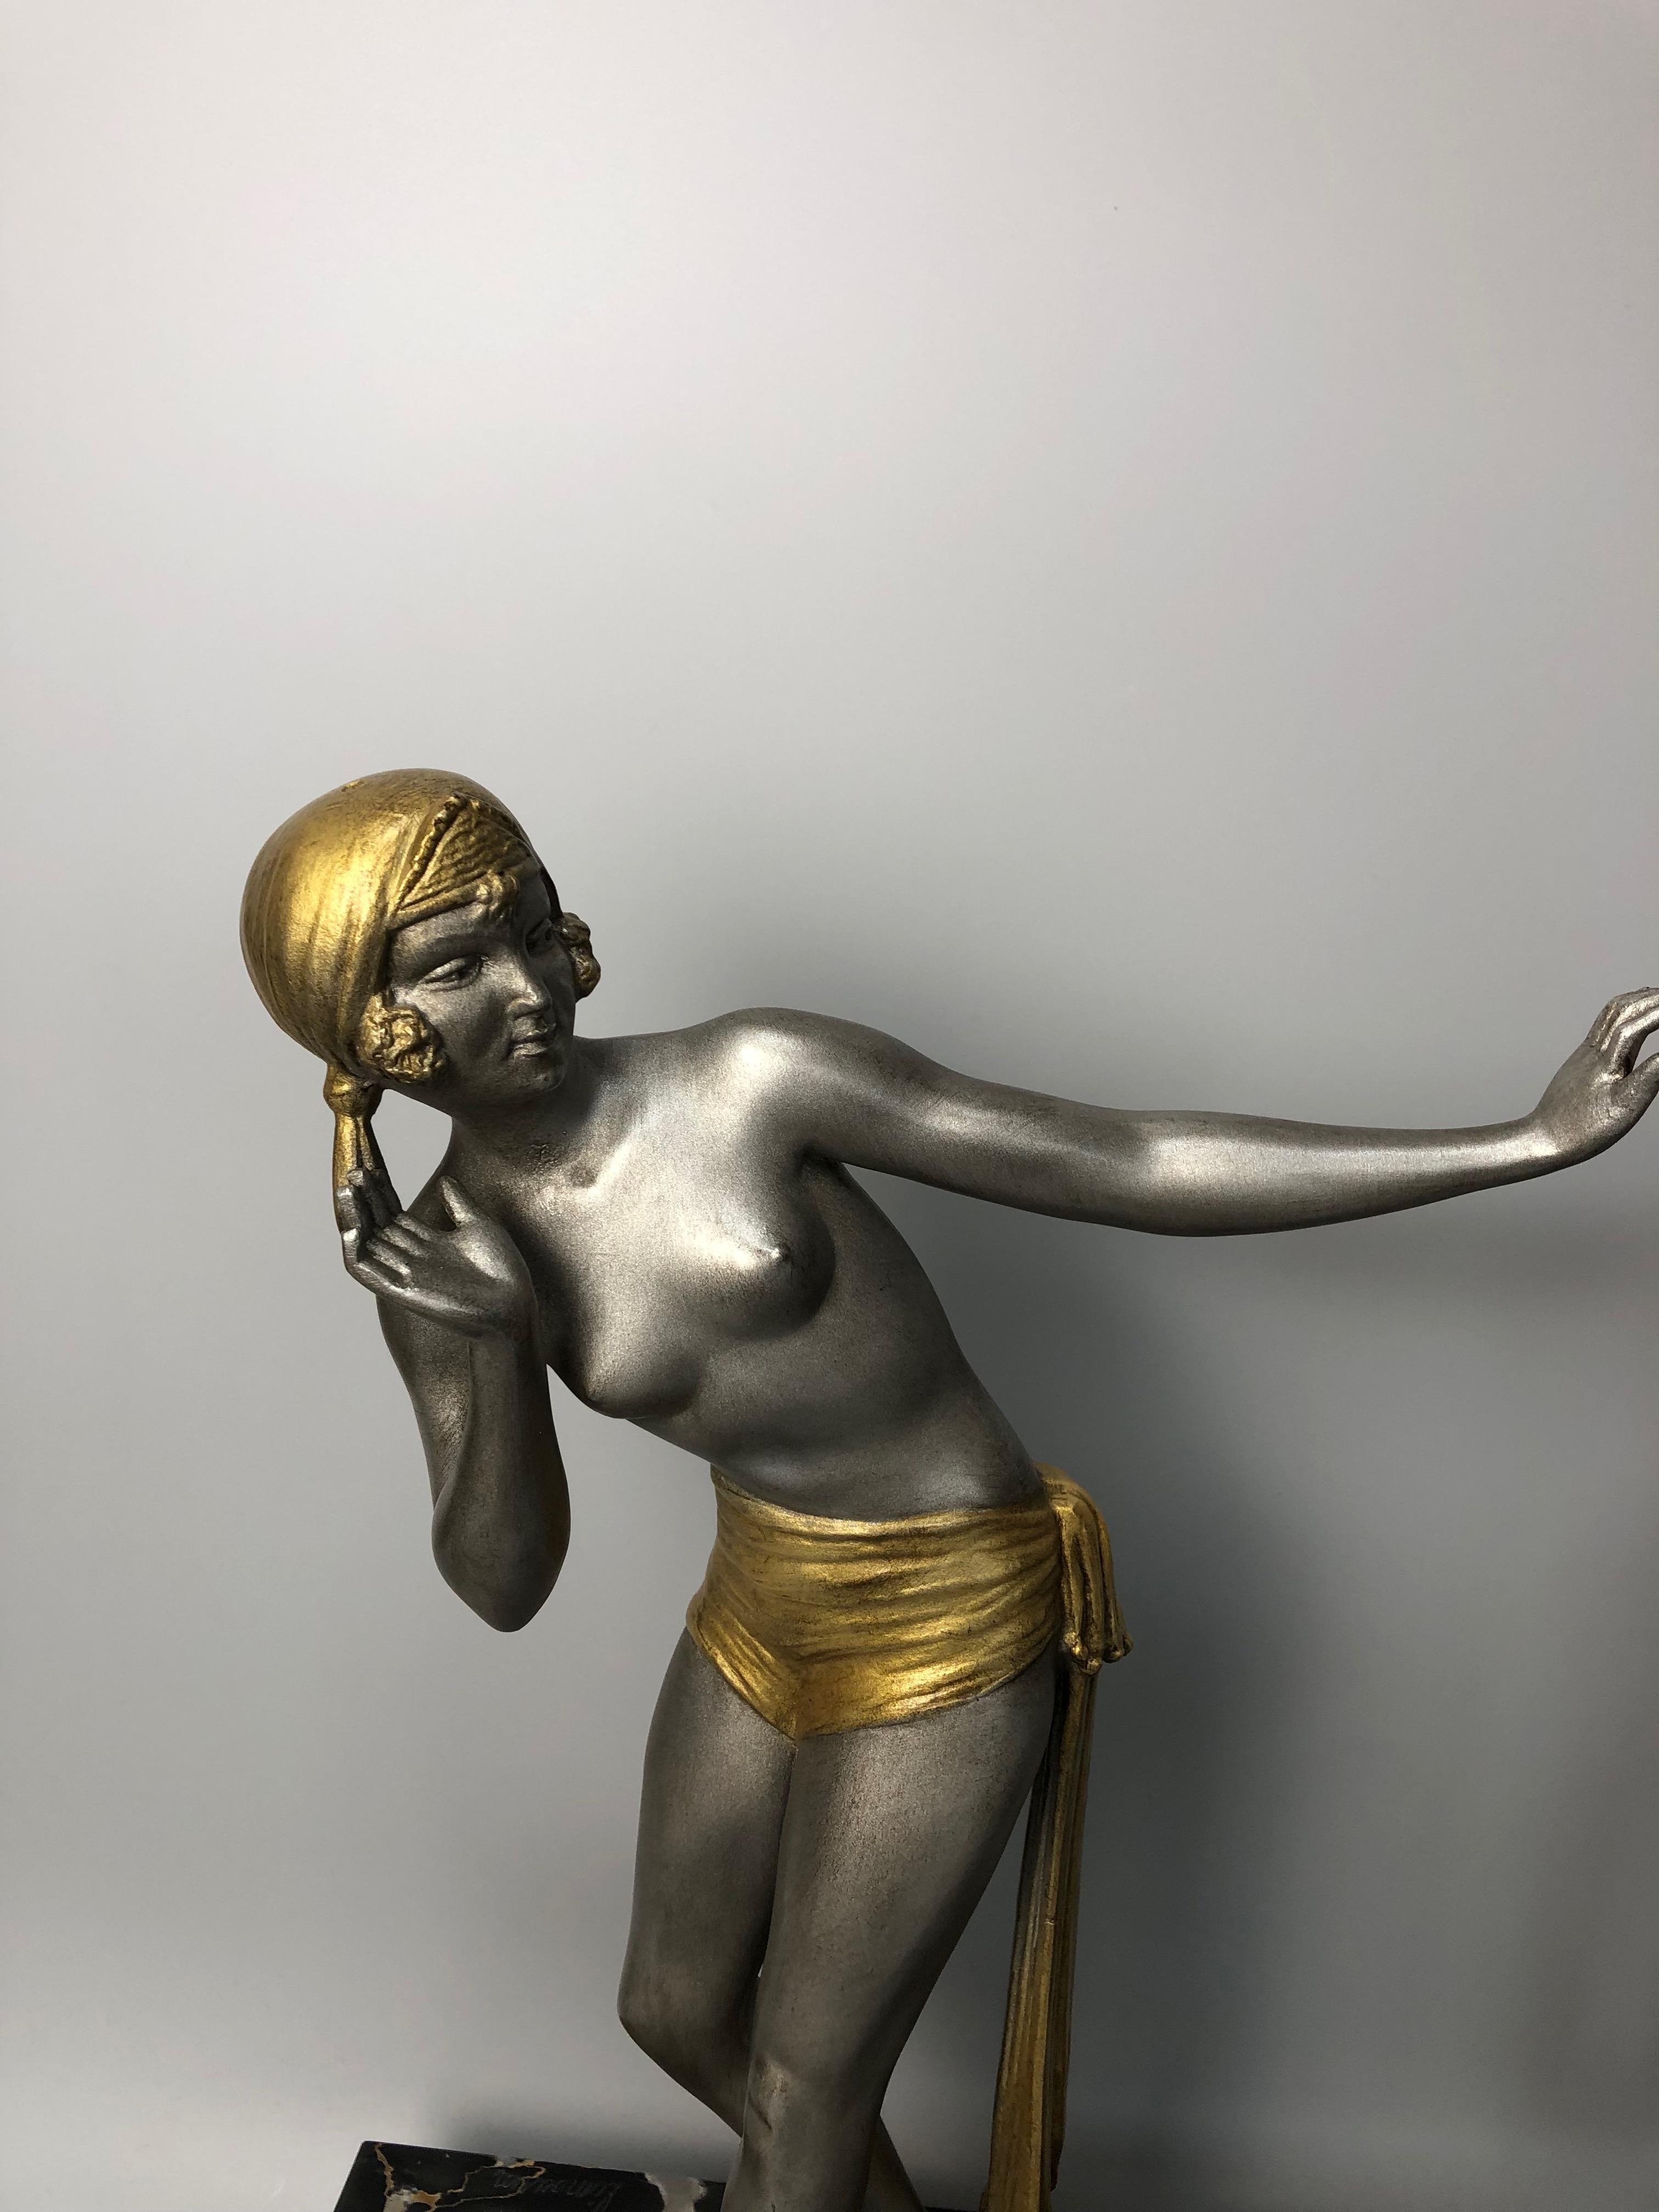 Art-déco-Skulptur um 1930.
Reguliert die Kaltpatina von Silber und Gold.
Alles auf einem Sockel aus Portormarmor.
Kleine Restaurierung an einem Becken.
Unterzeichnet auf Limousin-Marmor.
Gesamthöhe: 39 cm
Länge: 47,5 cm
Breite: 13.5 cm
Gewicht: 9 kg